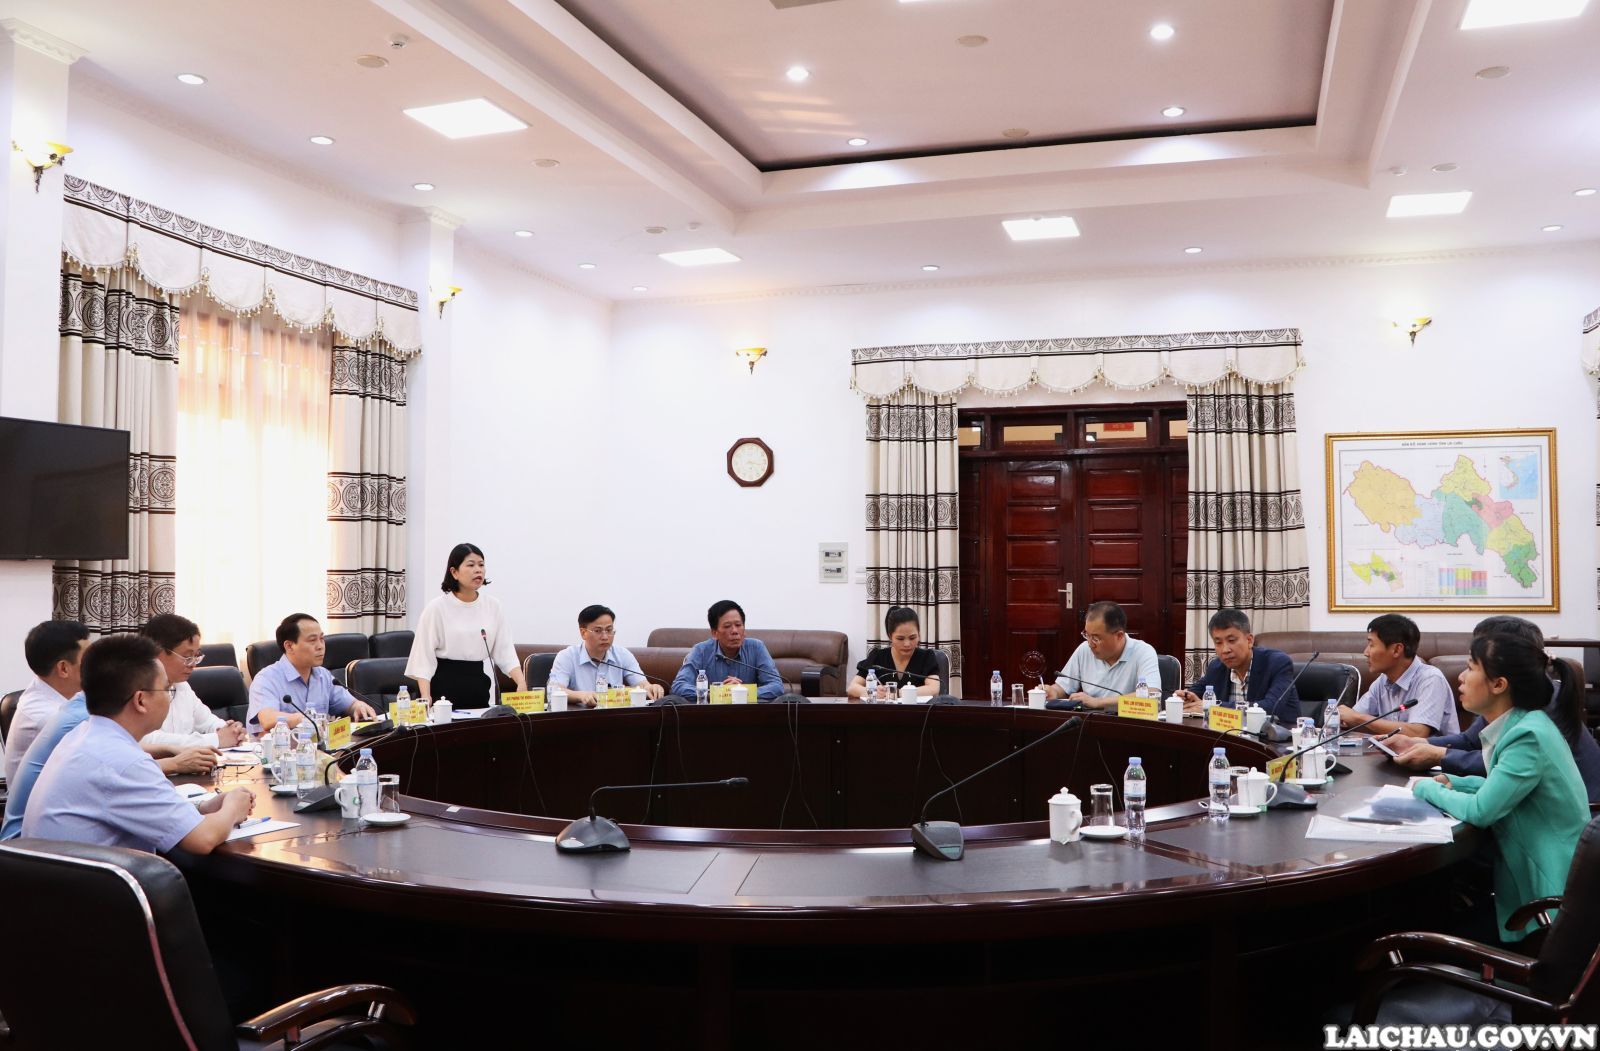 Đoàn công tác của Công ty TNHH Star Group Industries Vina làm việc tại tỉnh Lai Châu